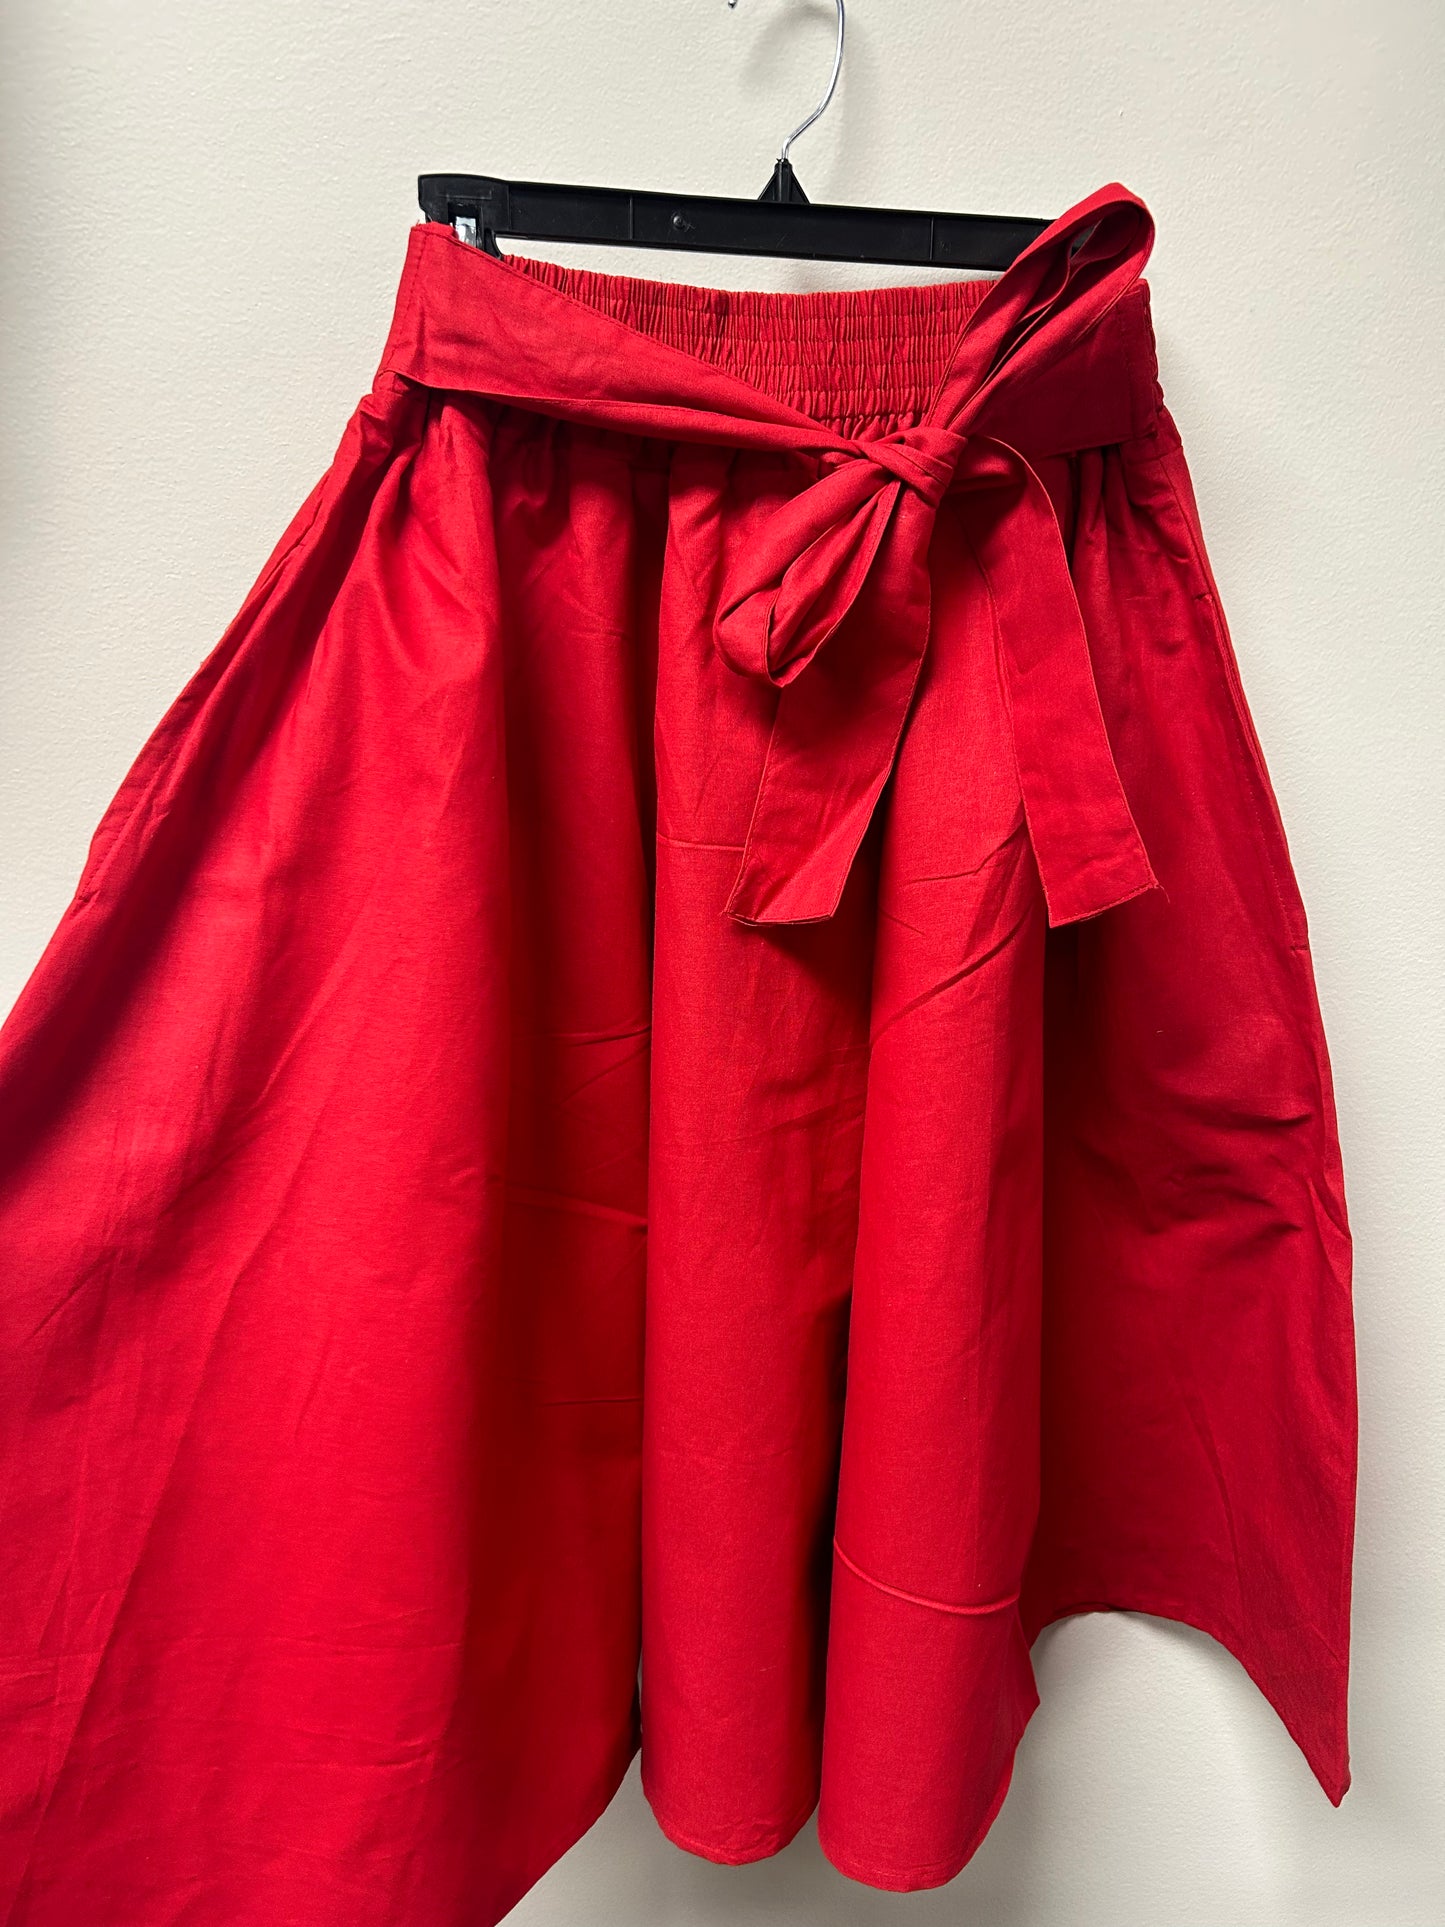 Mid Length Skirt- Solid Red Skirt